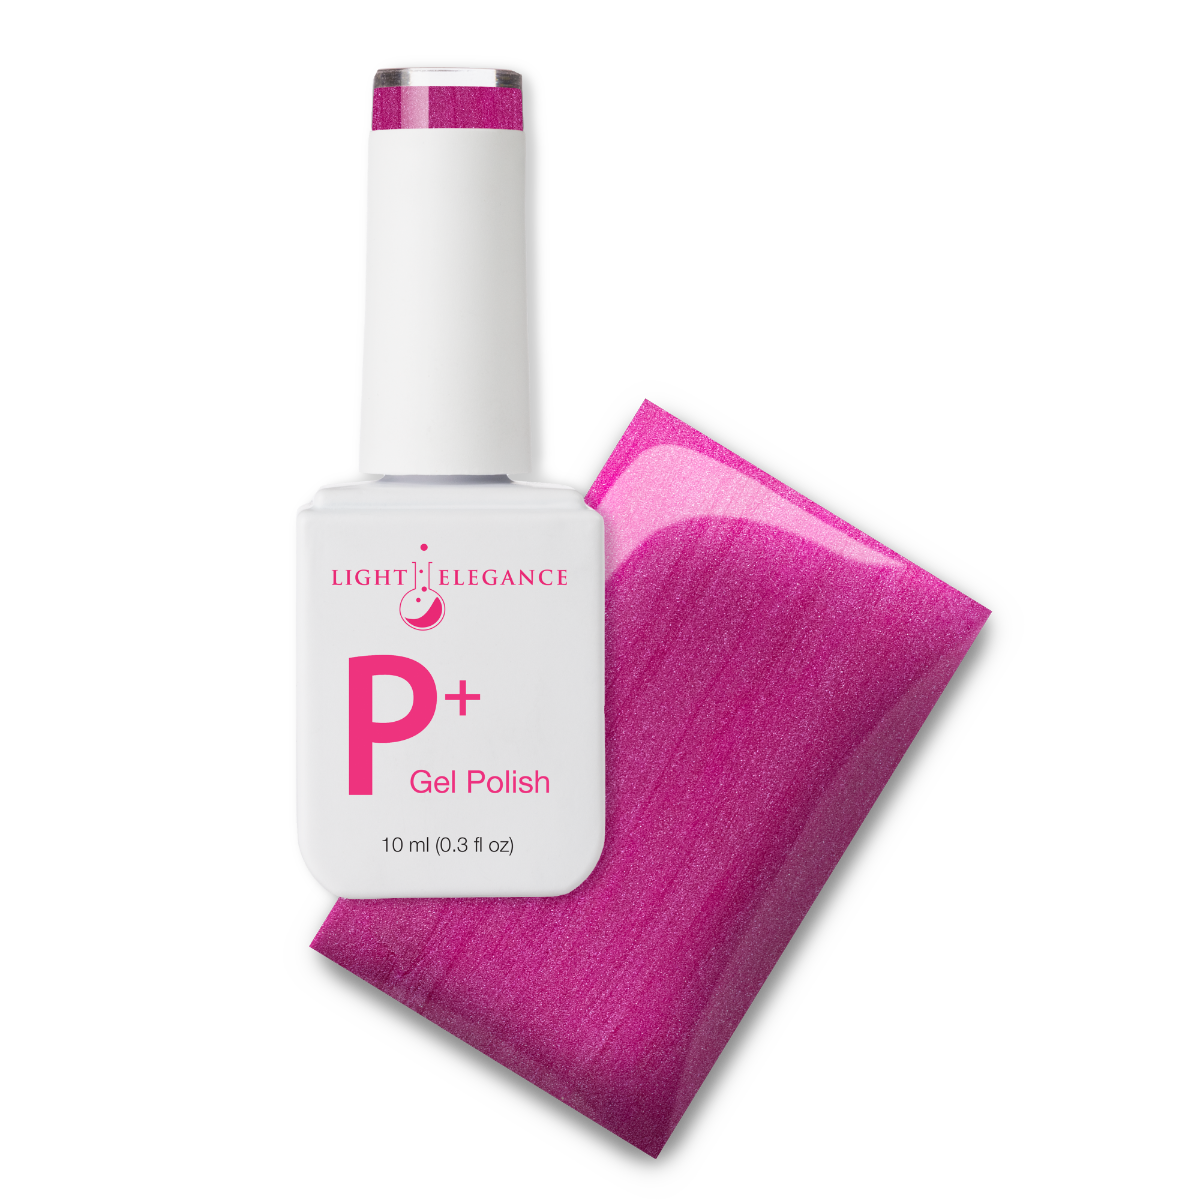 Light Elegance P+ Soak Off Color Gel - Predator in Pink :: New Packaging